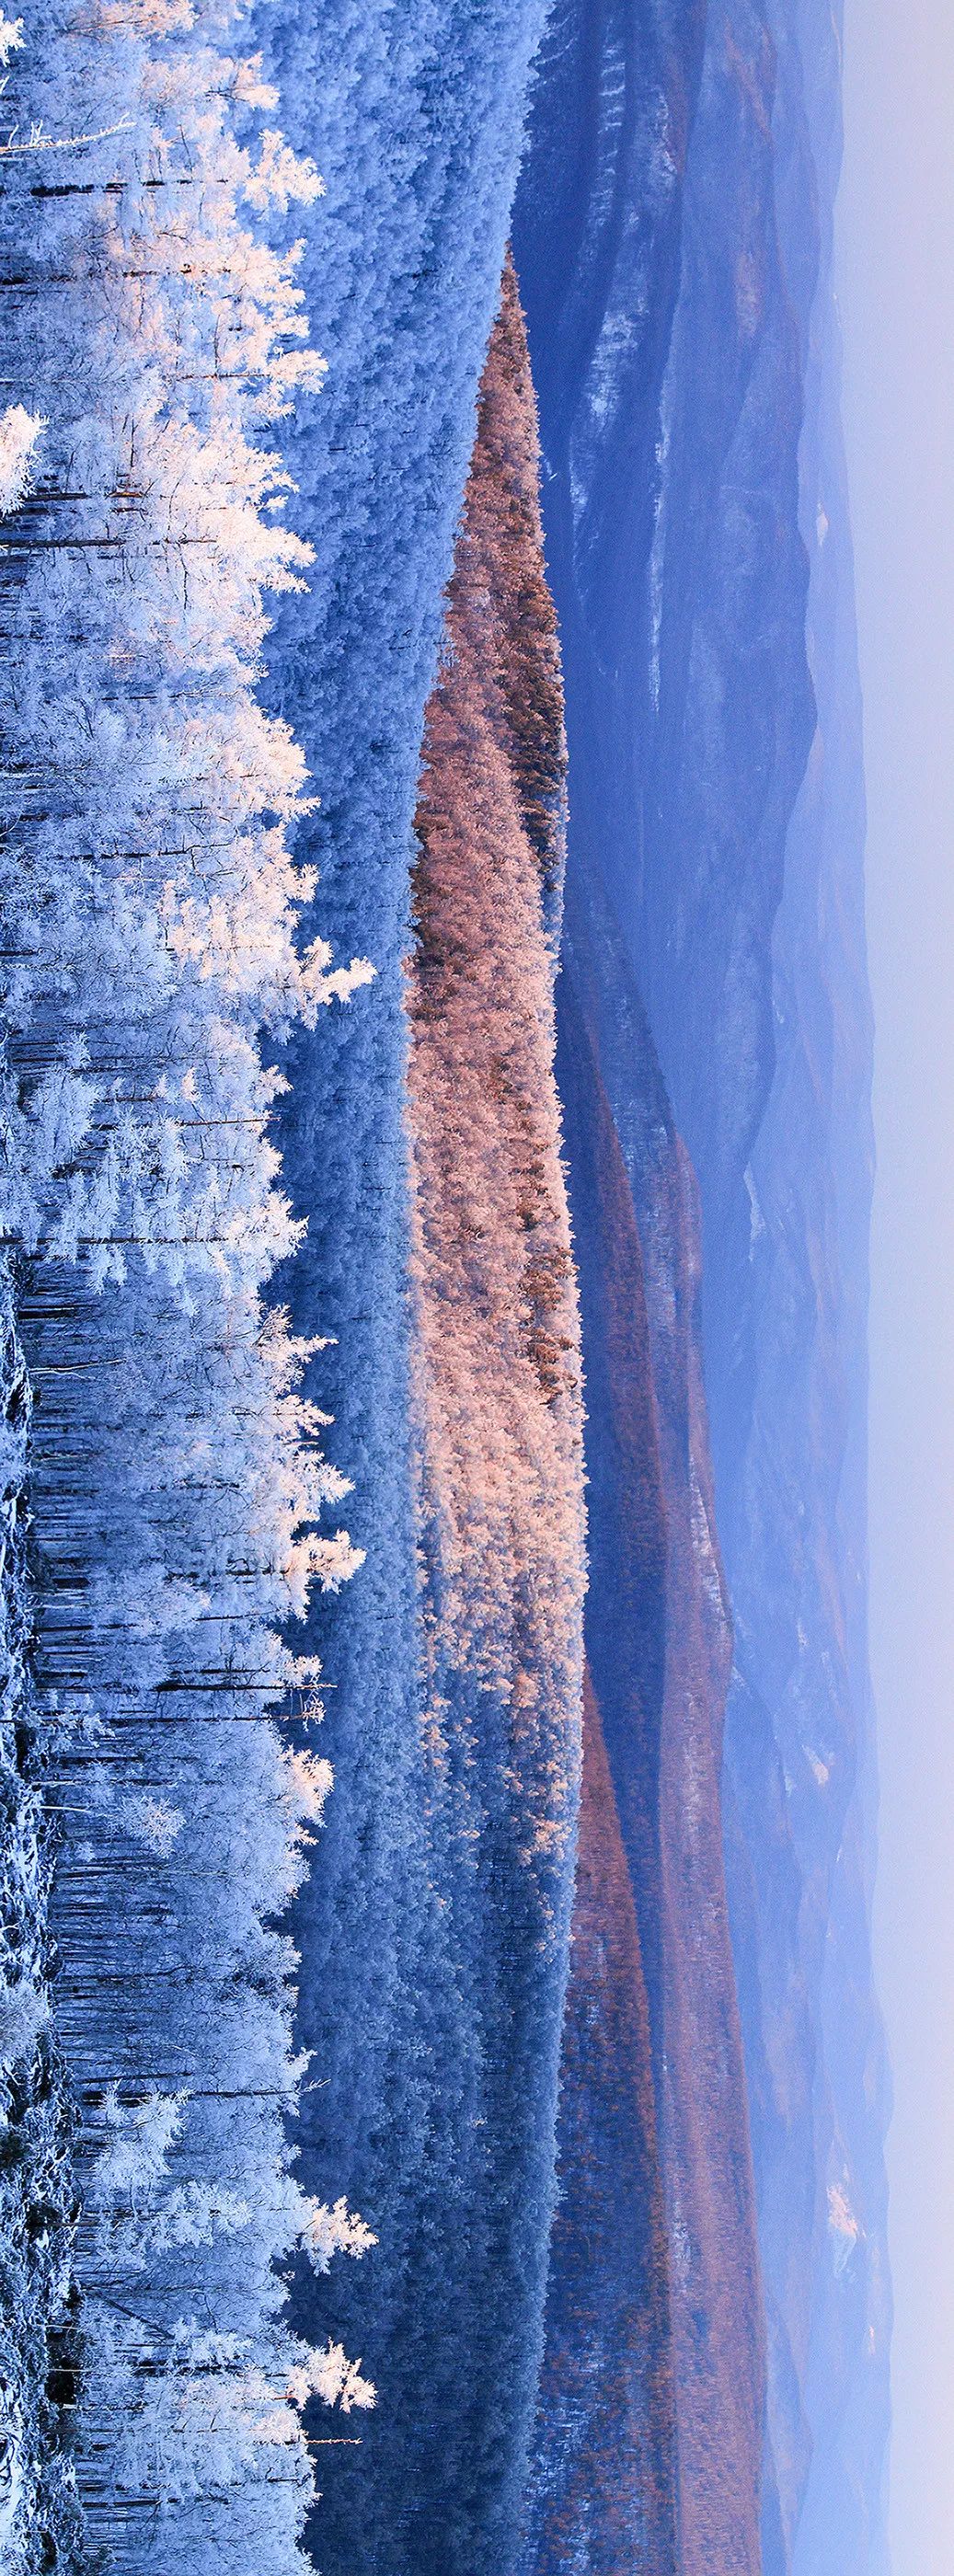 大兴安岭原始森林的冰雪风光，摄影师@刘兆明/星球研究所